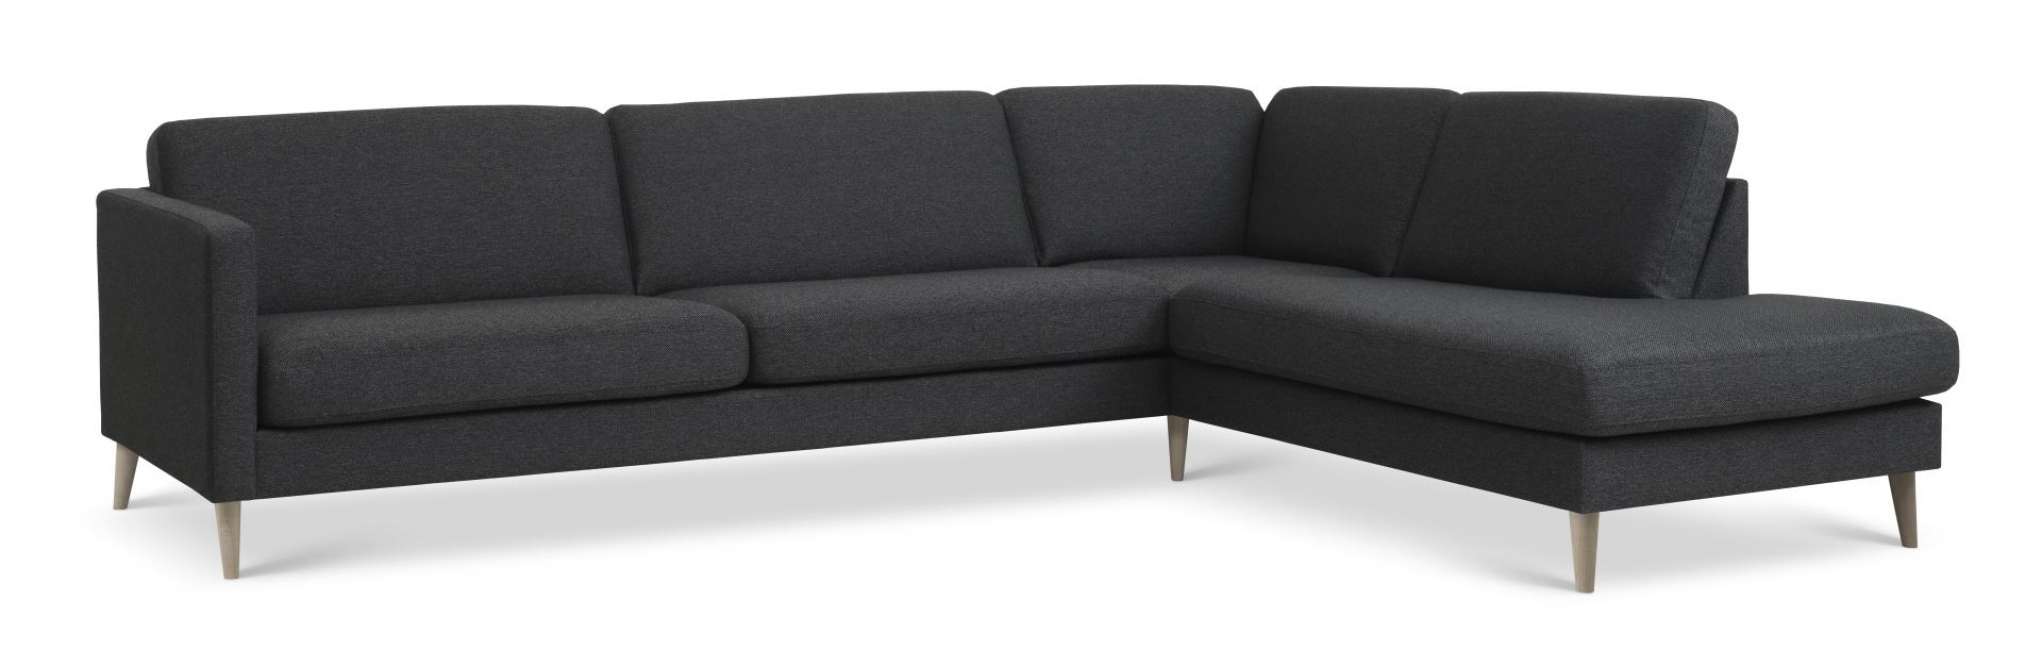 Priser på Ask sæt 61 stor OE sofa, m. højre chaiselong - antracitgrå polyester stof og natur træ